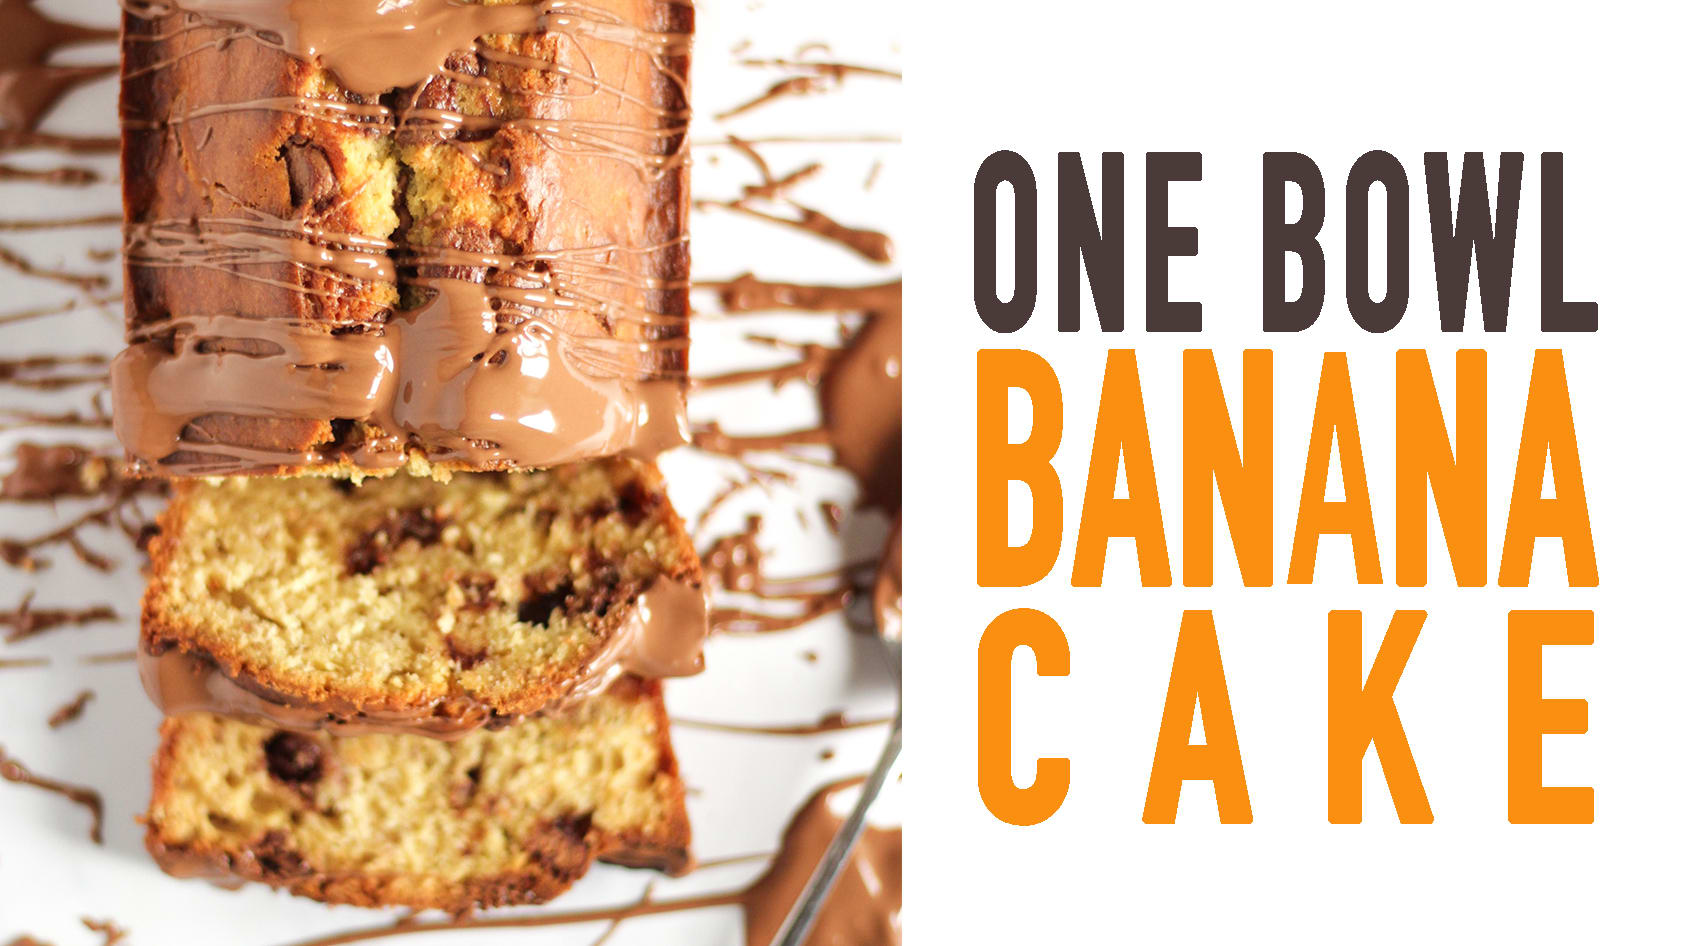 Banana Mug Cake - Calories and Nutrition Facts